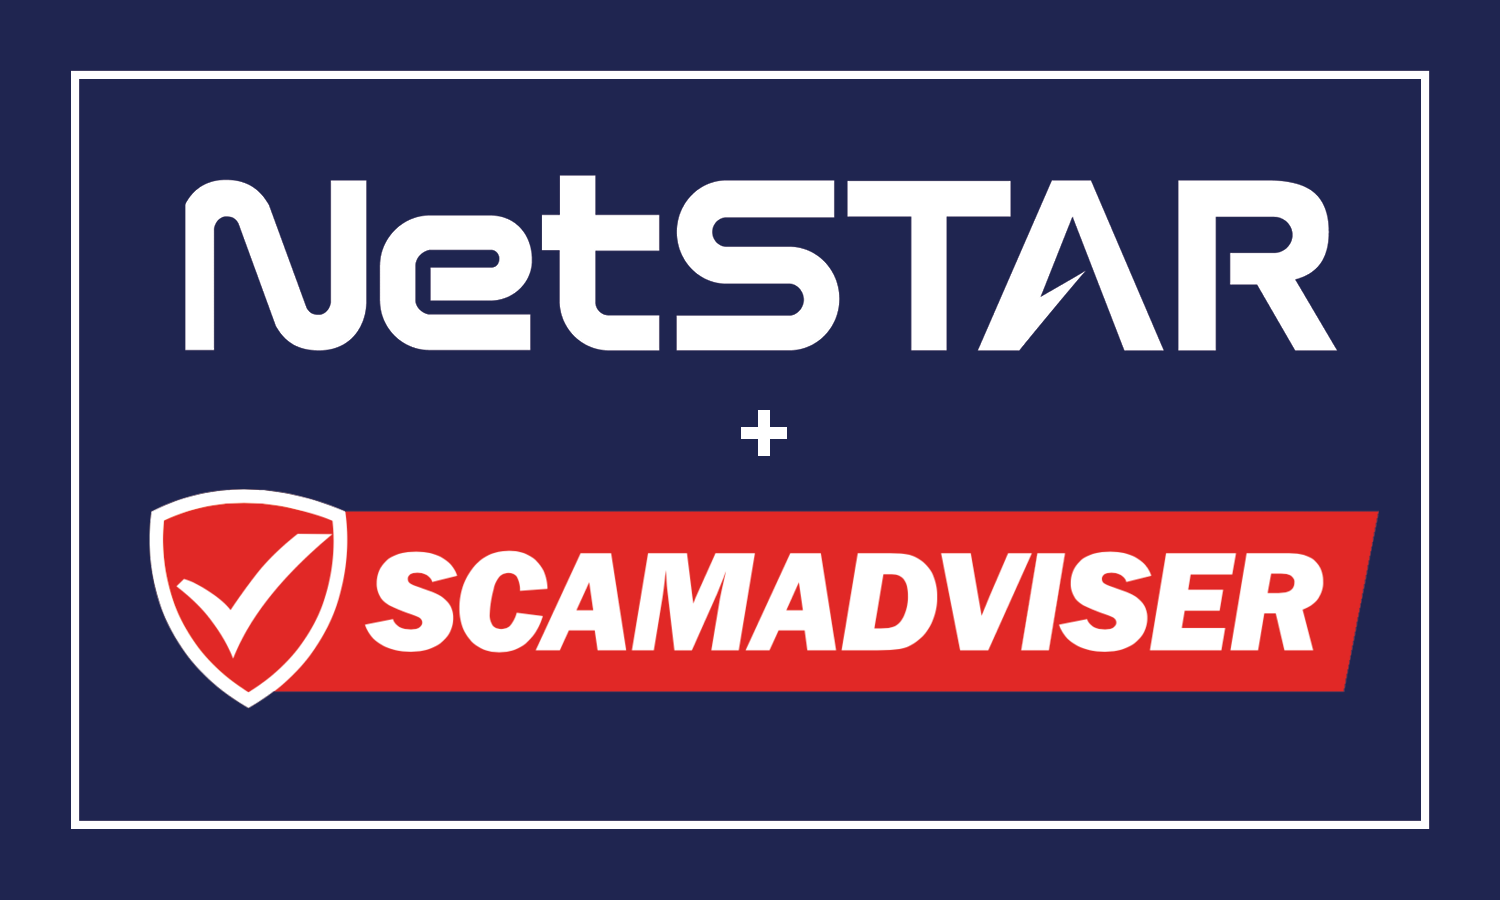 NetSTAR and Scamadviser